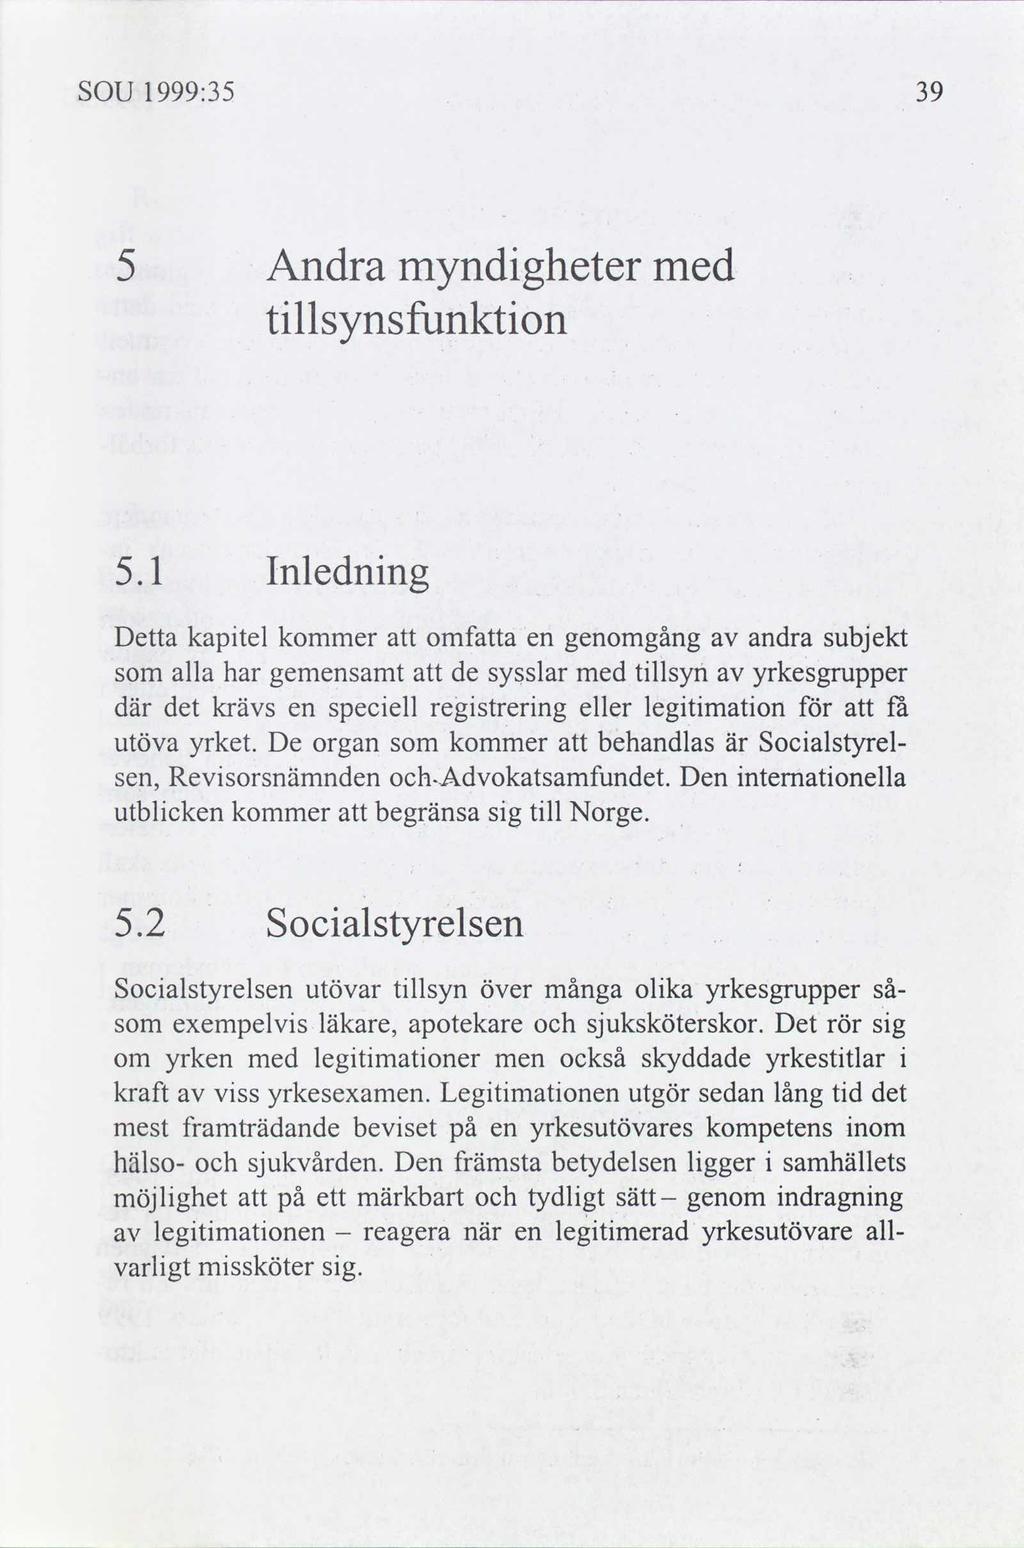 SOU 1999:35 Andra tllsynsfunkton myndgheter med 5.